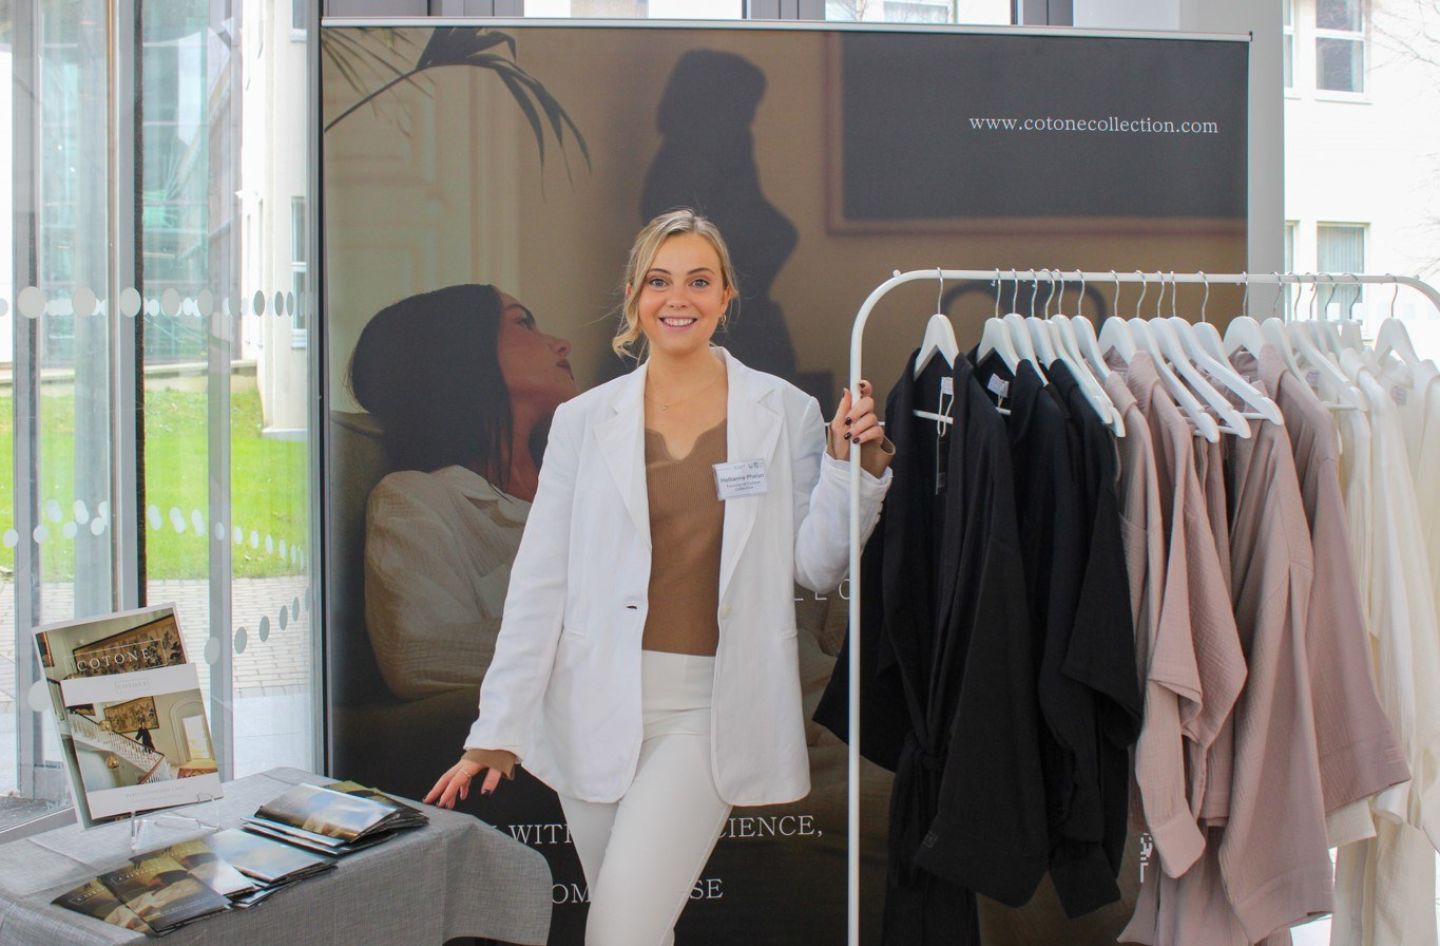 Laois-native’s luxury clothing line recognised at SETU’s entrepreneurship showcase